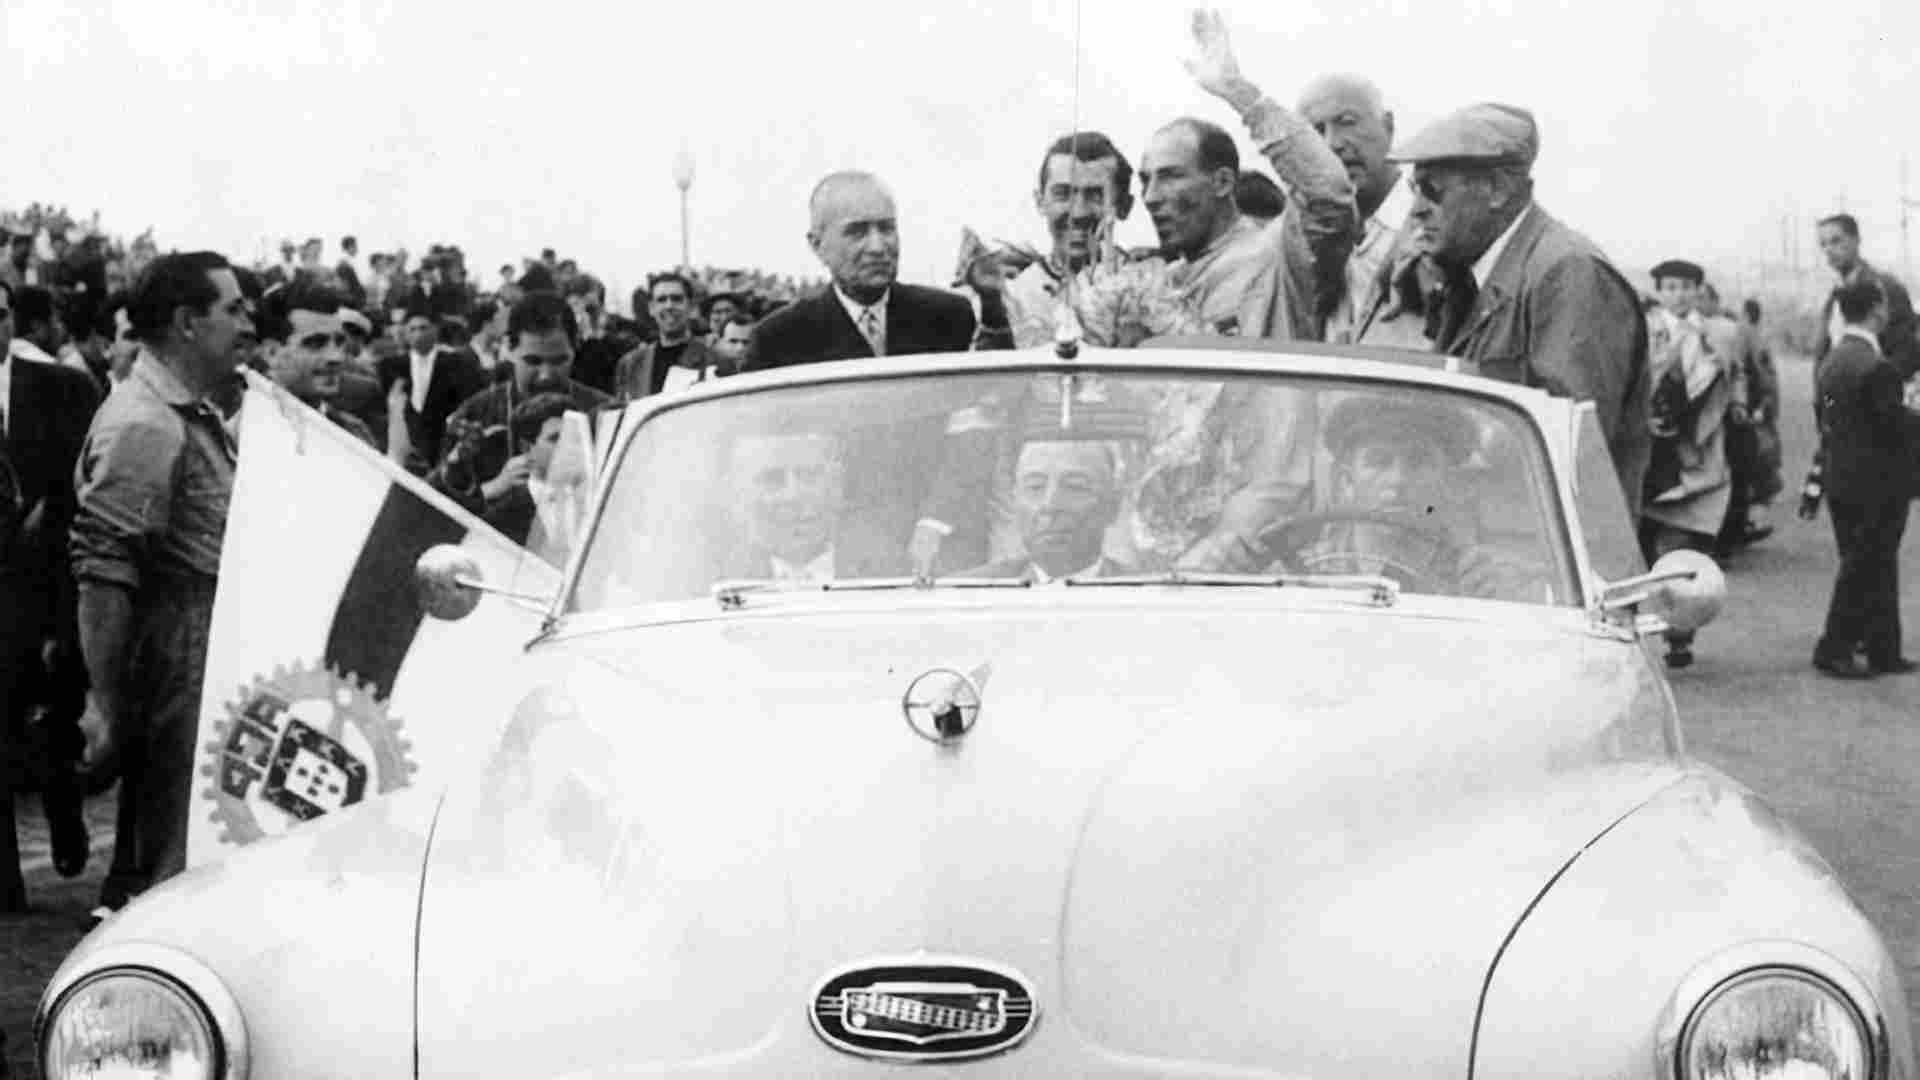 1958 - O primeiro GP de Portugal de F1